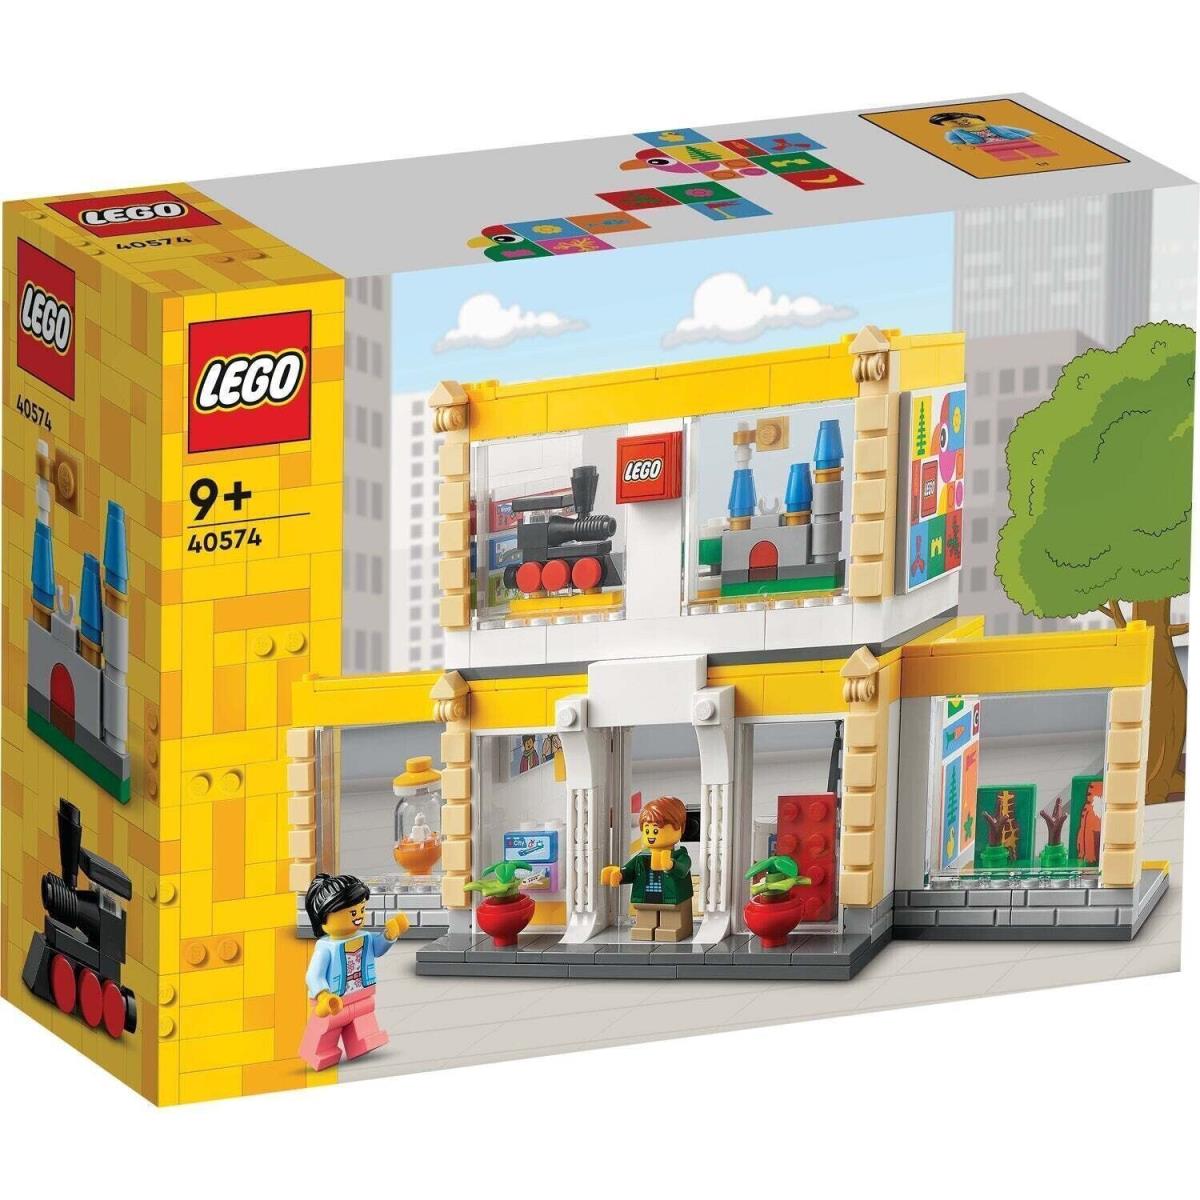 Lego Promotional: Lego Brand Store 40574